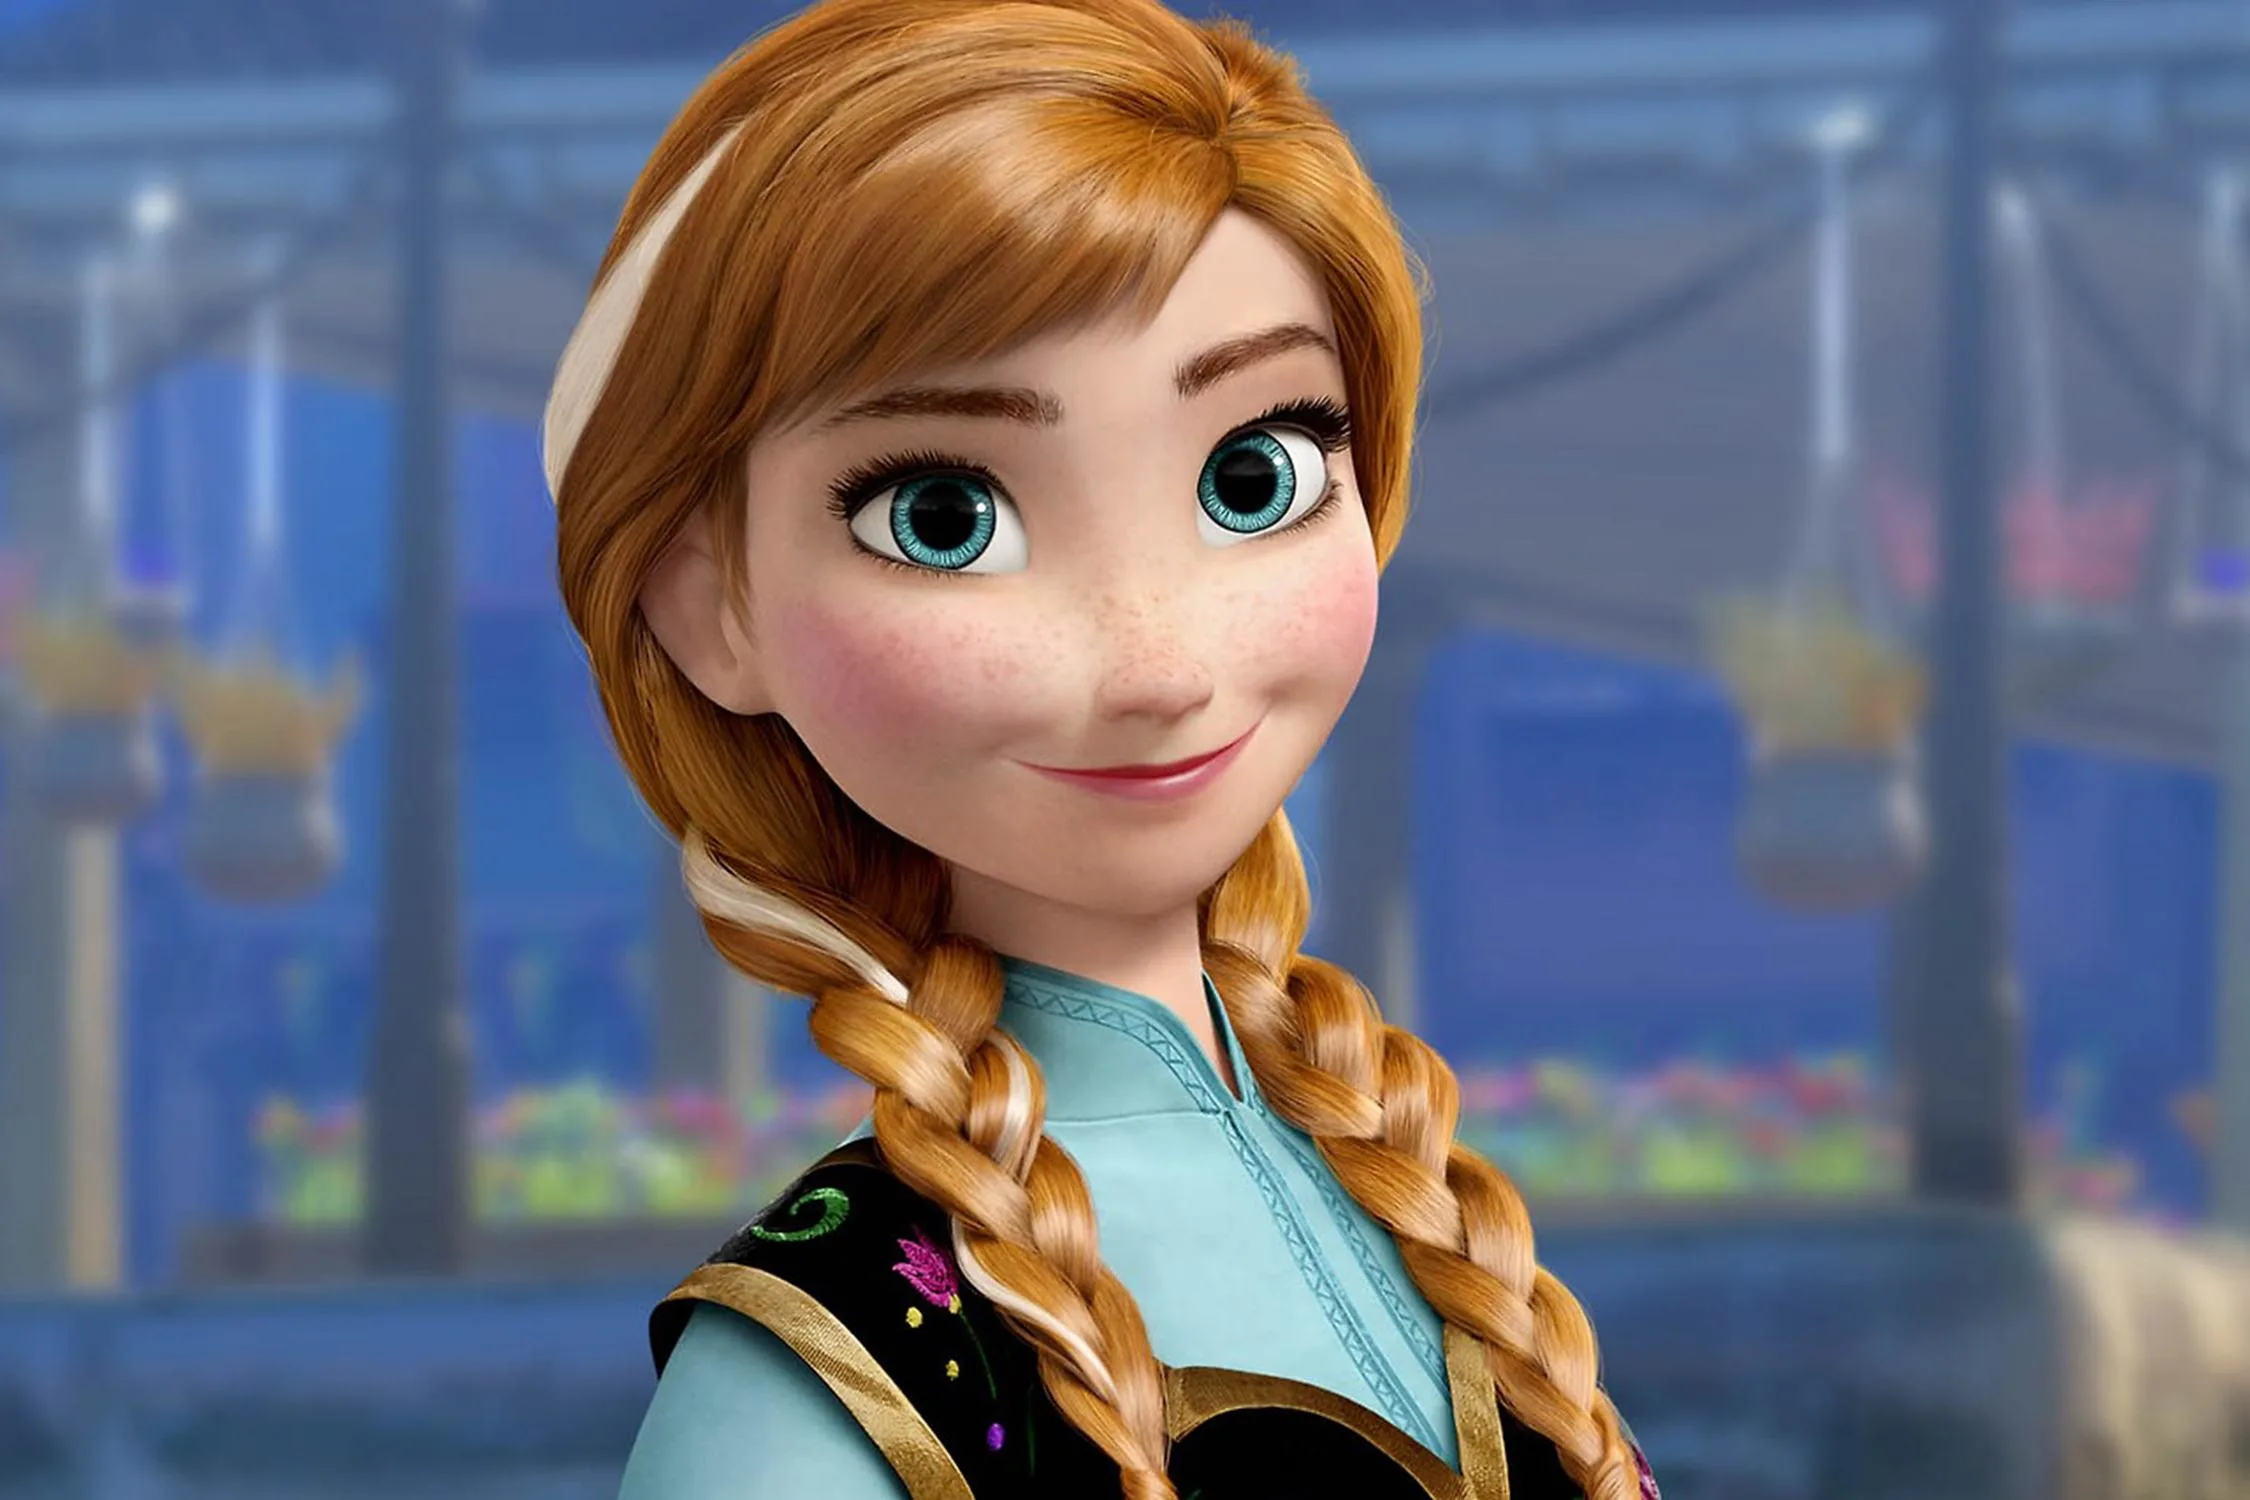 Anna Frozen Disney